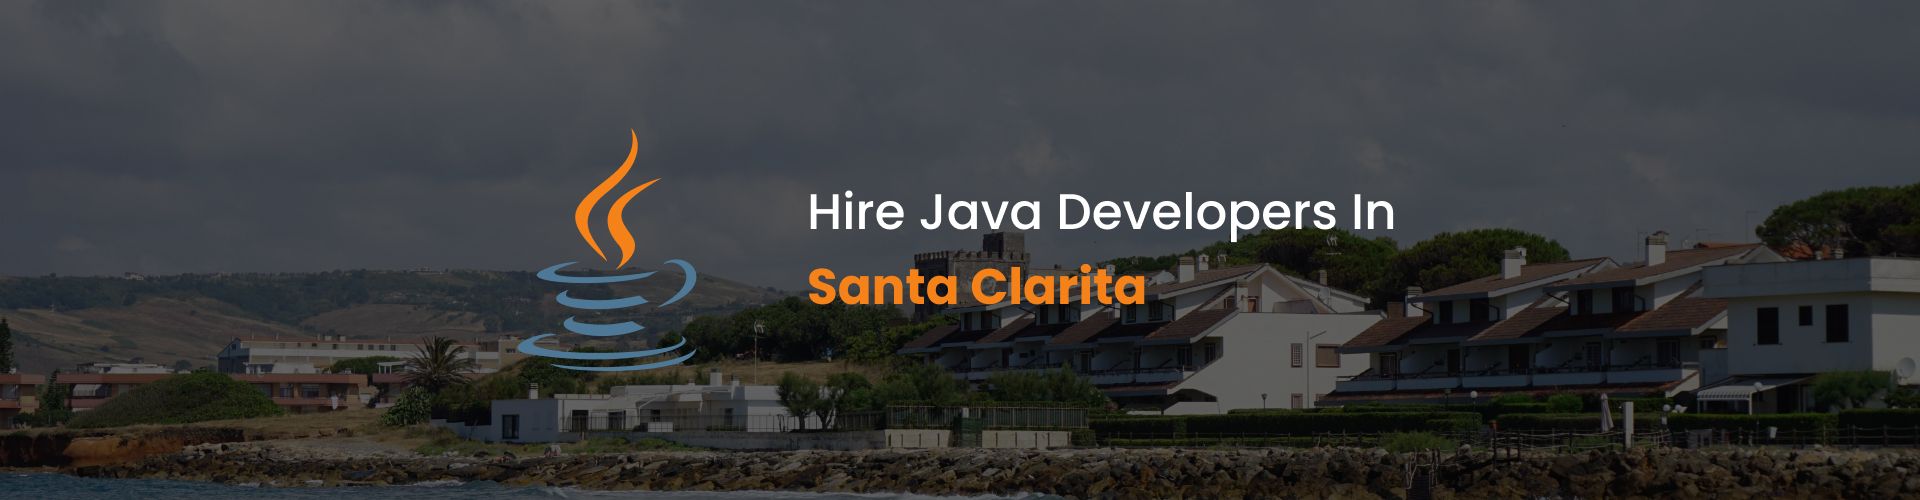 hire java developers in santa clarita